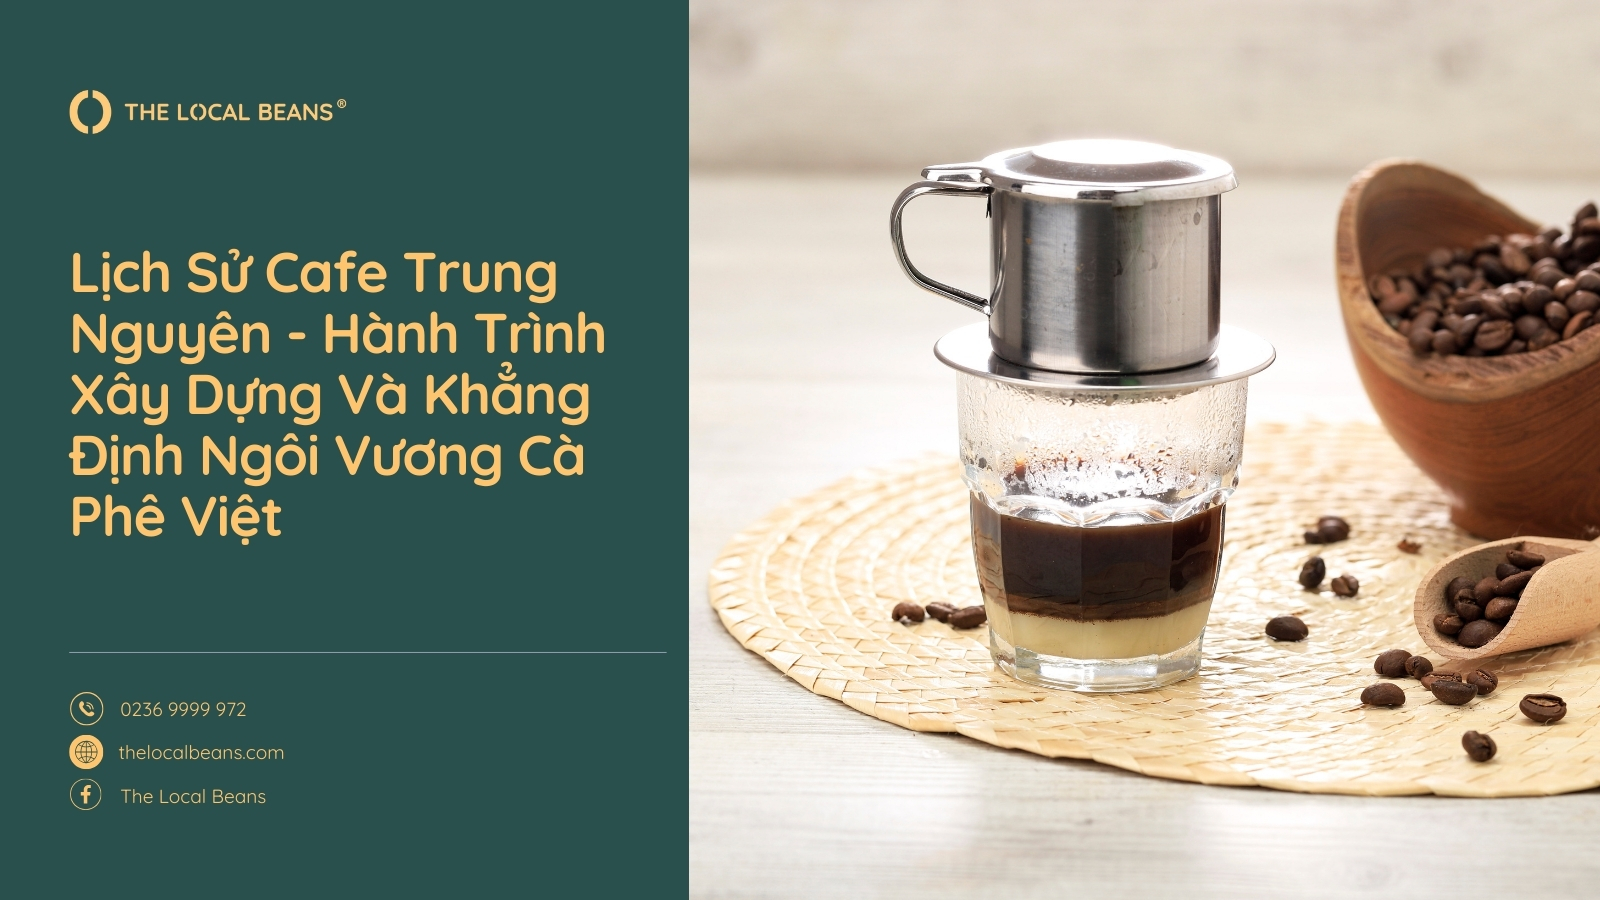 Lịch Sử Cafe Trung Nguyên – Hành Trình Xây Dựng Và Khẳng Định Ngôi Vương Cà Phê Việt